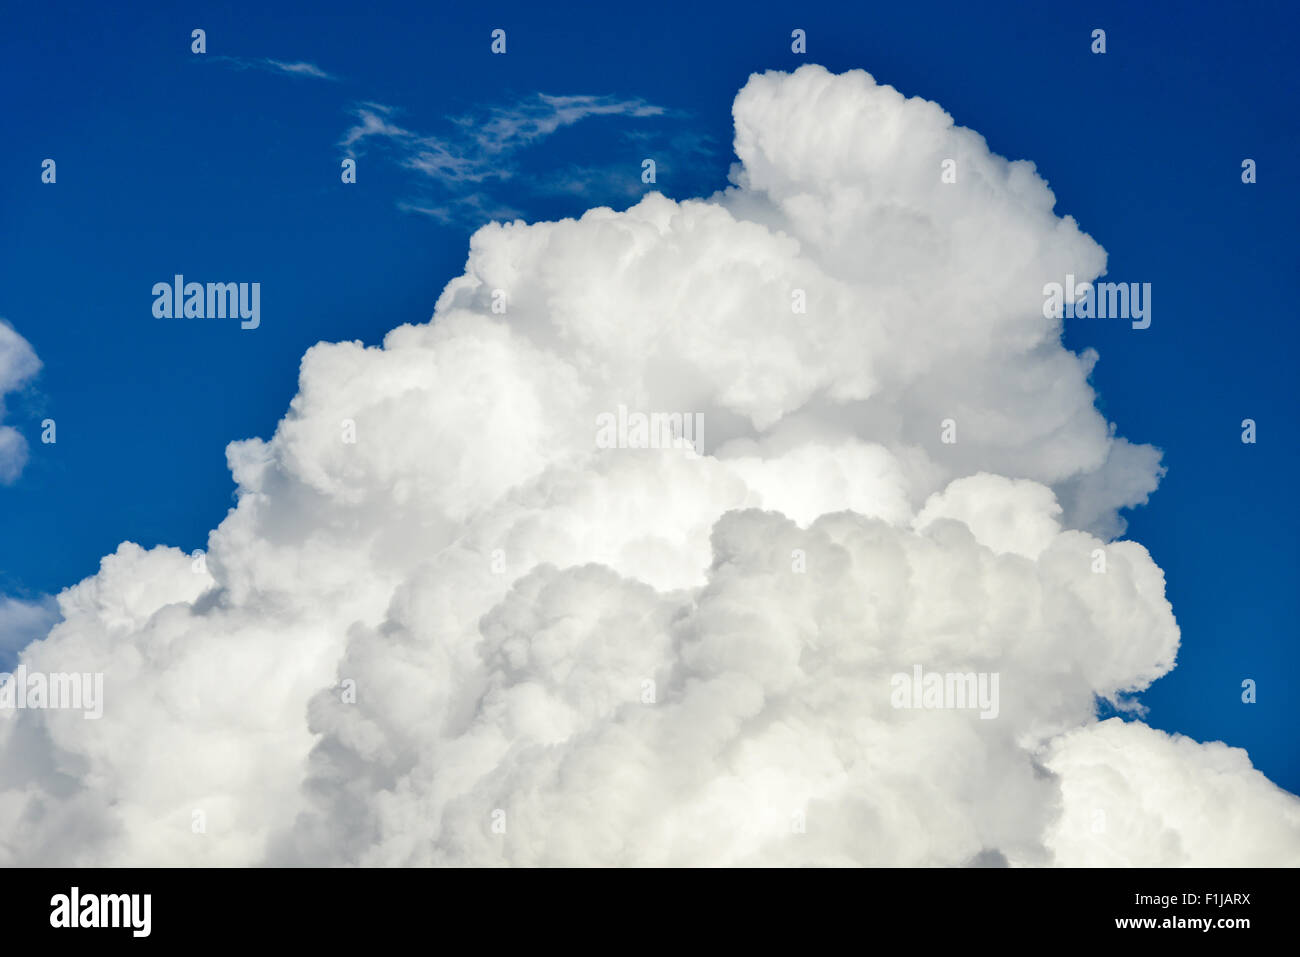 Cirrus nuages contre ciel bleu près de l'aéroport de Heathrow, Londres, Angleterre, Royaume-Uni Banque D'Images